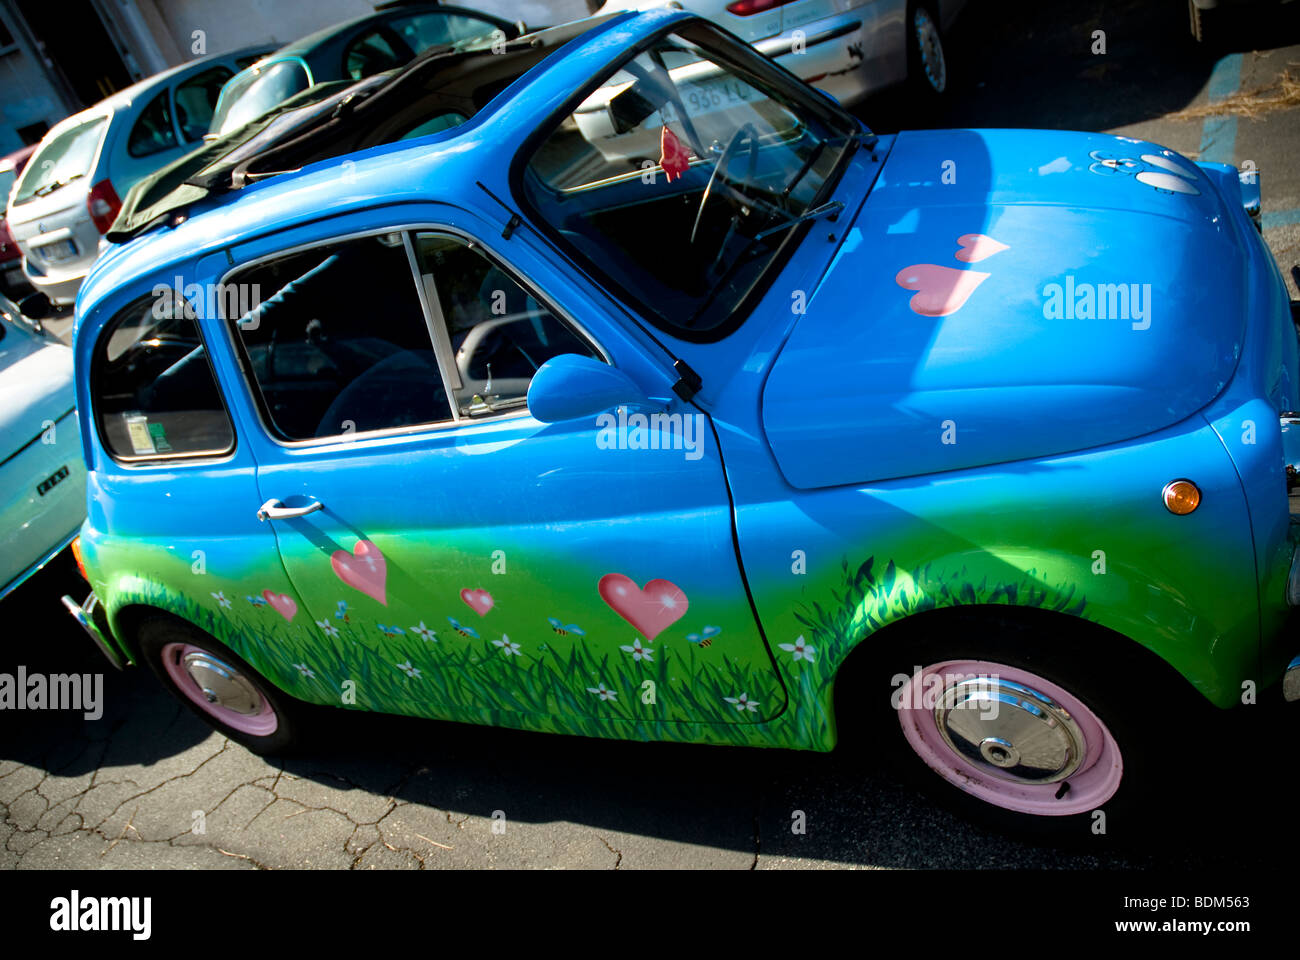 Fiat, bambino 500, l'Italien vintage car peint avec amour coeurs rose Banque D'Images